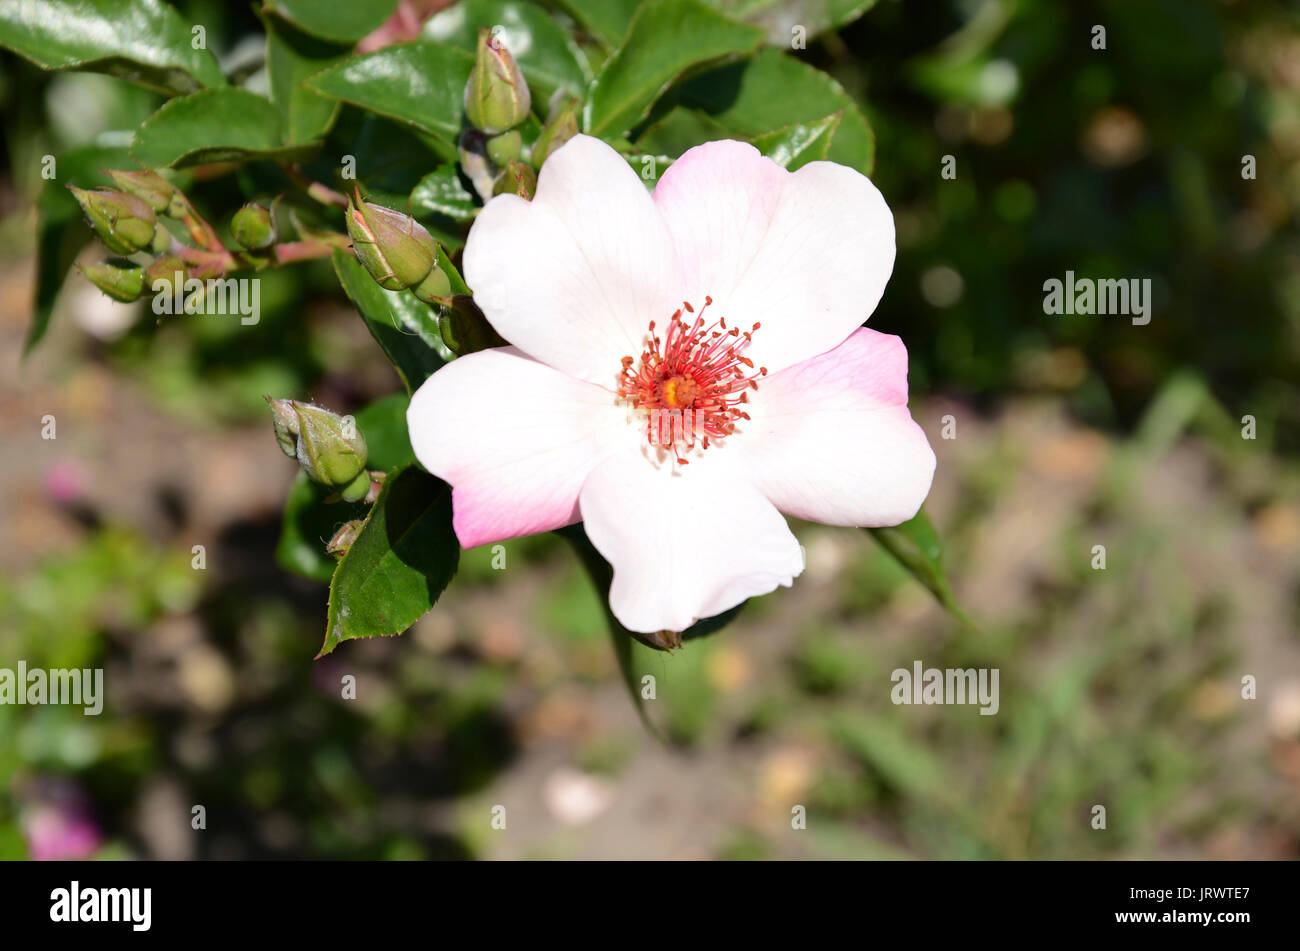 Giardino rose con un delicato fiore rosa, close-up contro uno sfondo di foglie verdi Foto Stock